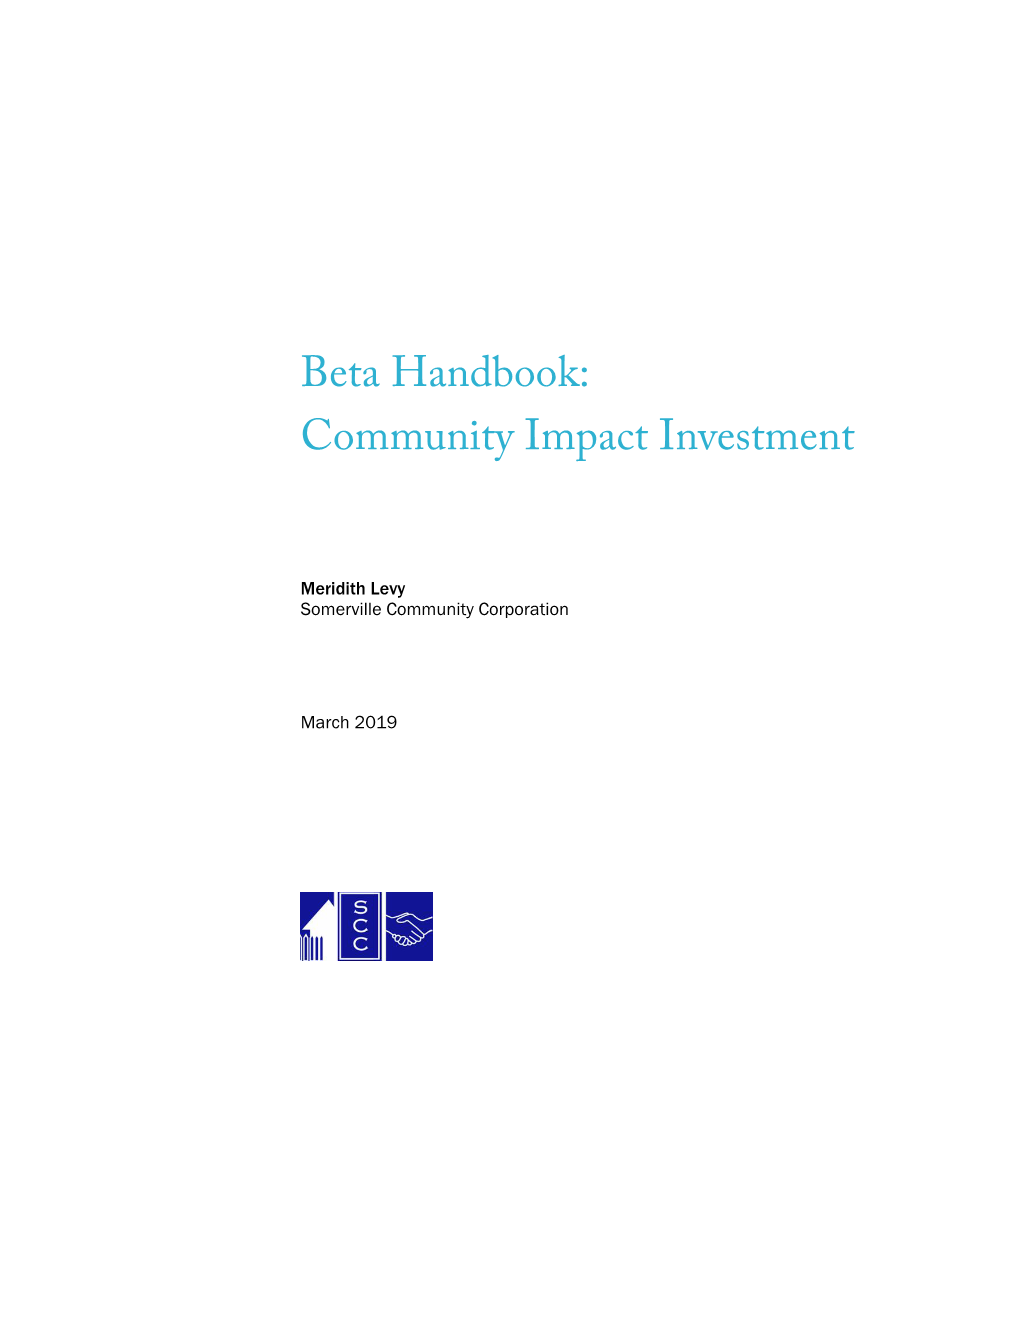 Beta Handbook: Community Impact Investment